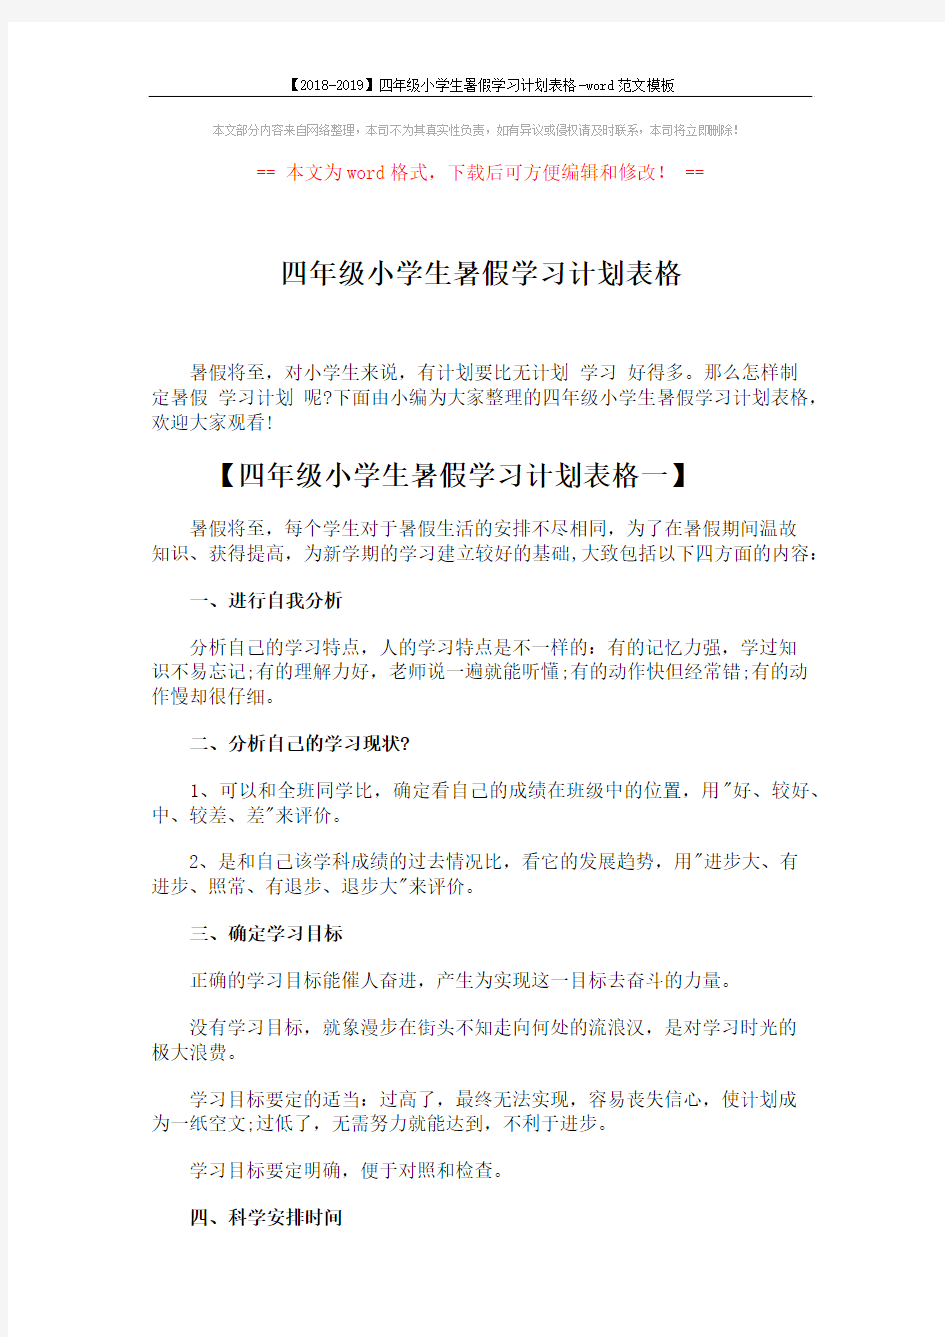 【2018-2019】四年级小学生暑假学习计划表格-word范文模板 (3页)